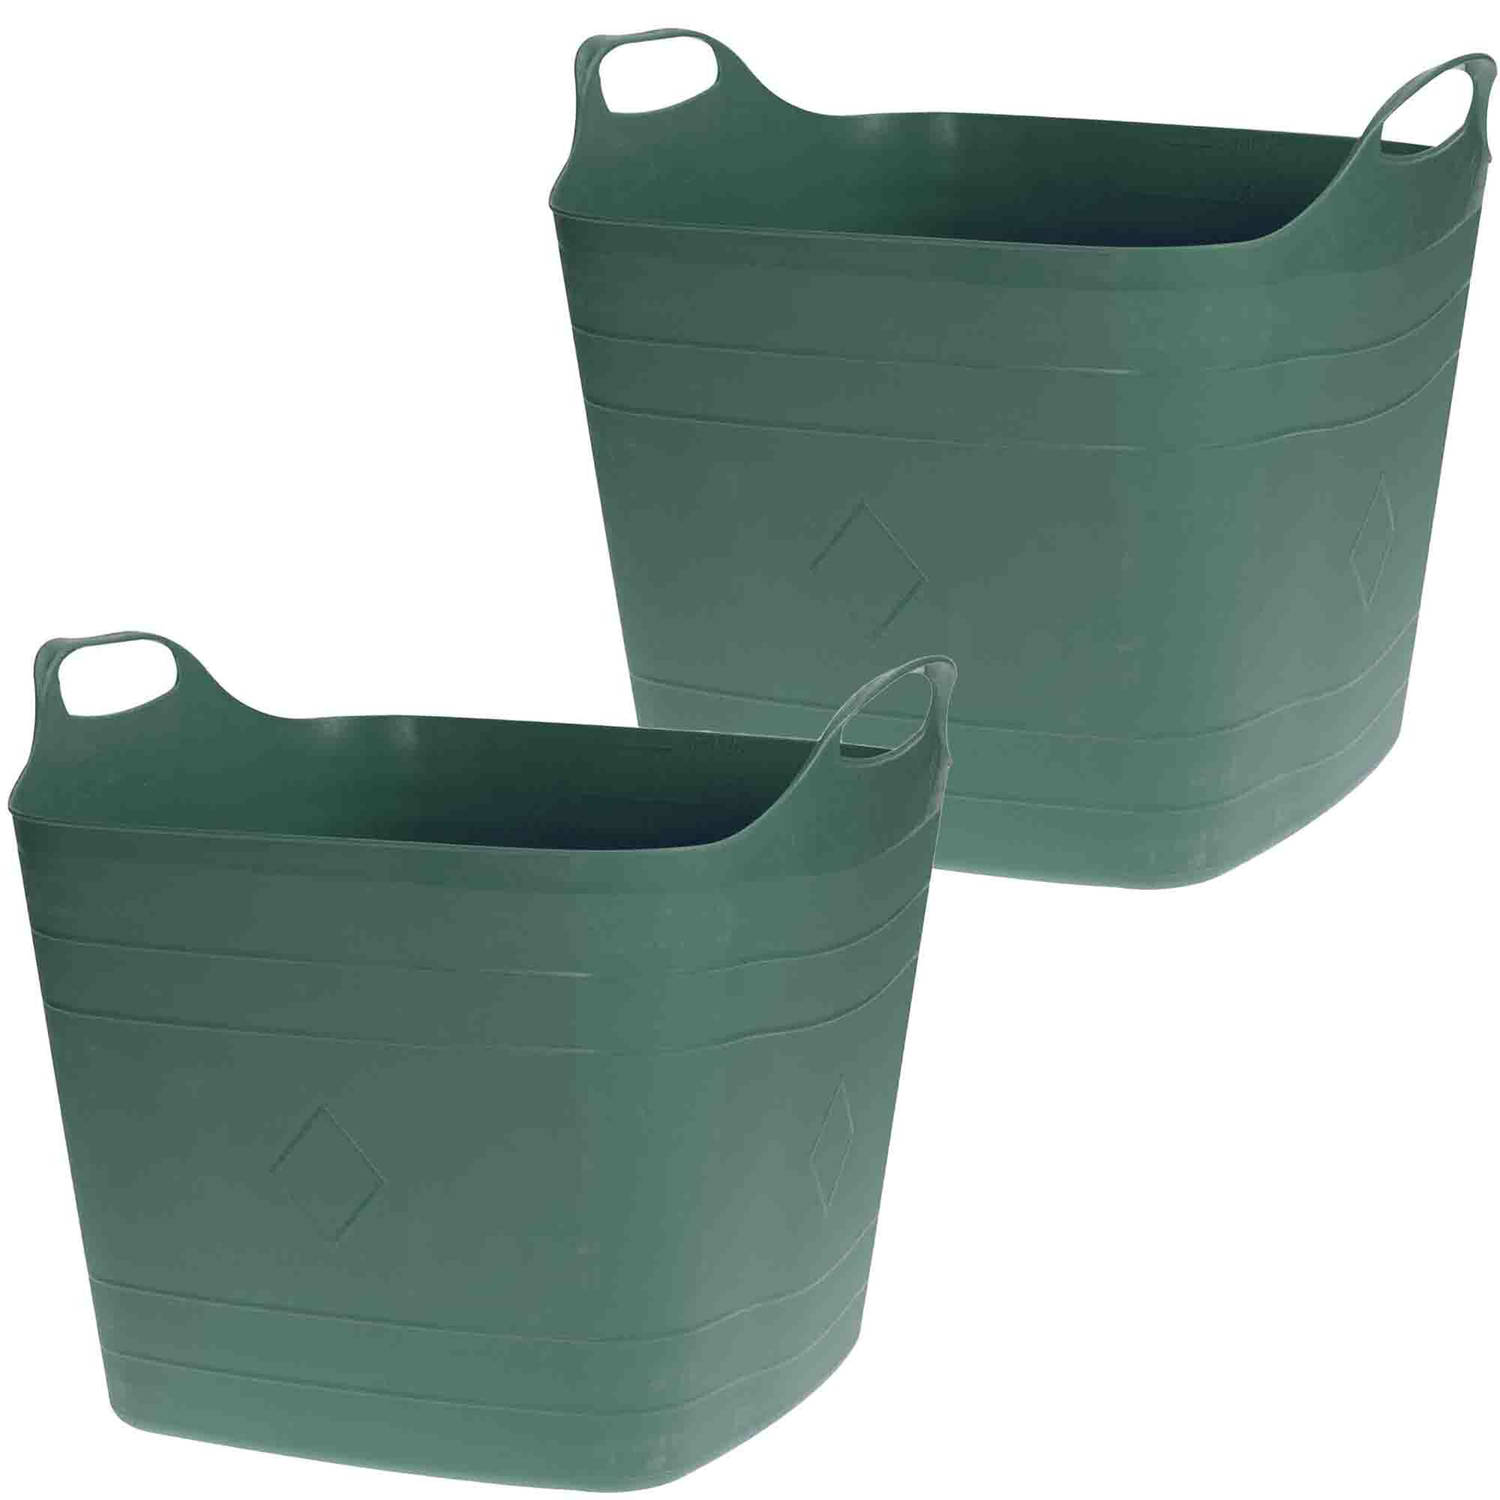 2x Stuks Flexibele kuip emmers-wasmanden groen 40 liter vierkant kunststof Wasmanden